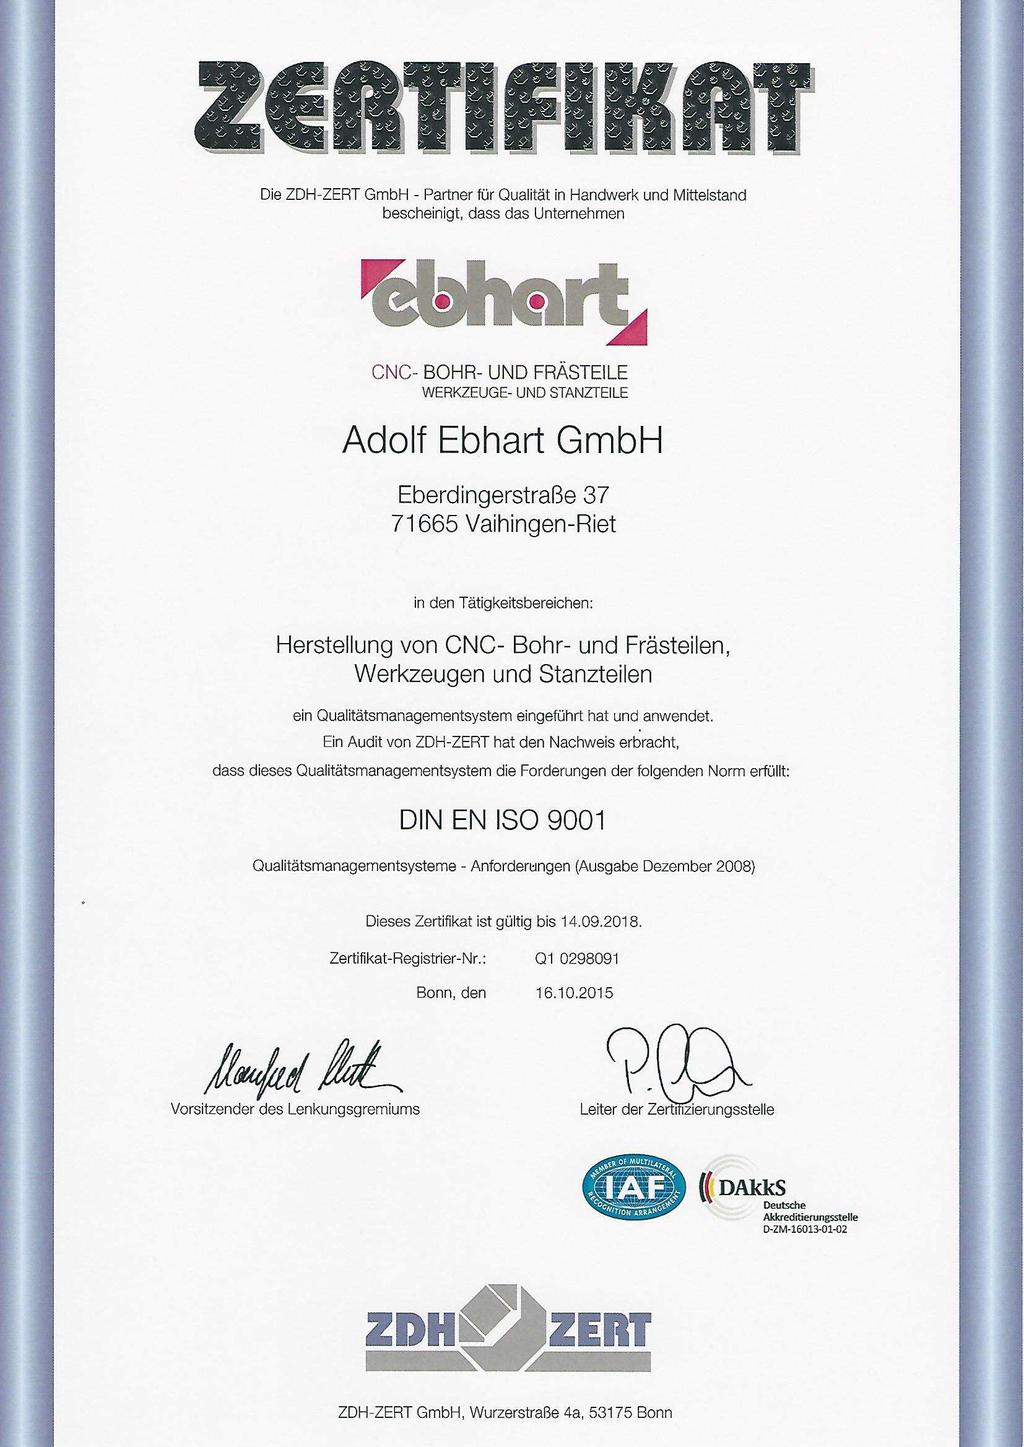 Qualität Die Adolf Ebhart GmbH ist seit 1999 nach DIN ISO 9002 zertifiziert. Seit 2006 erfolgte die Zertifizierung nach DIN ISO 9001.